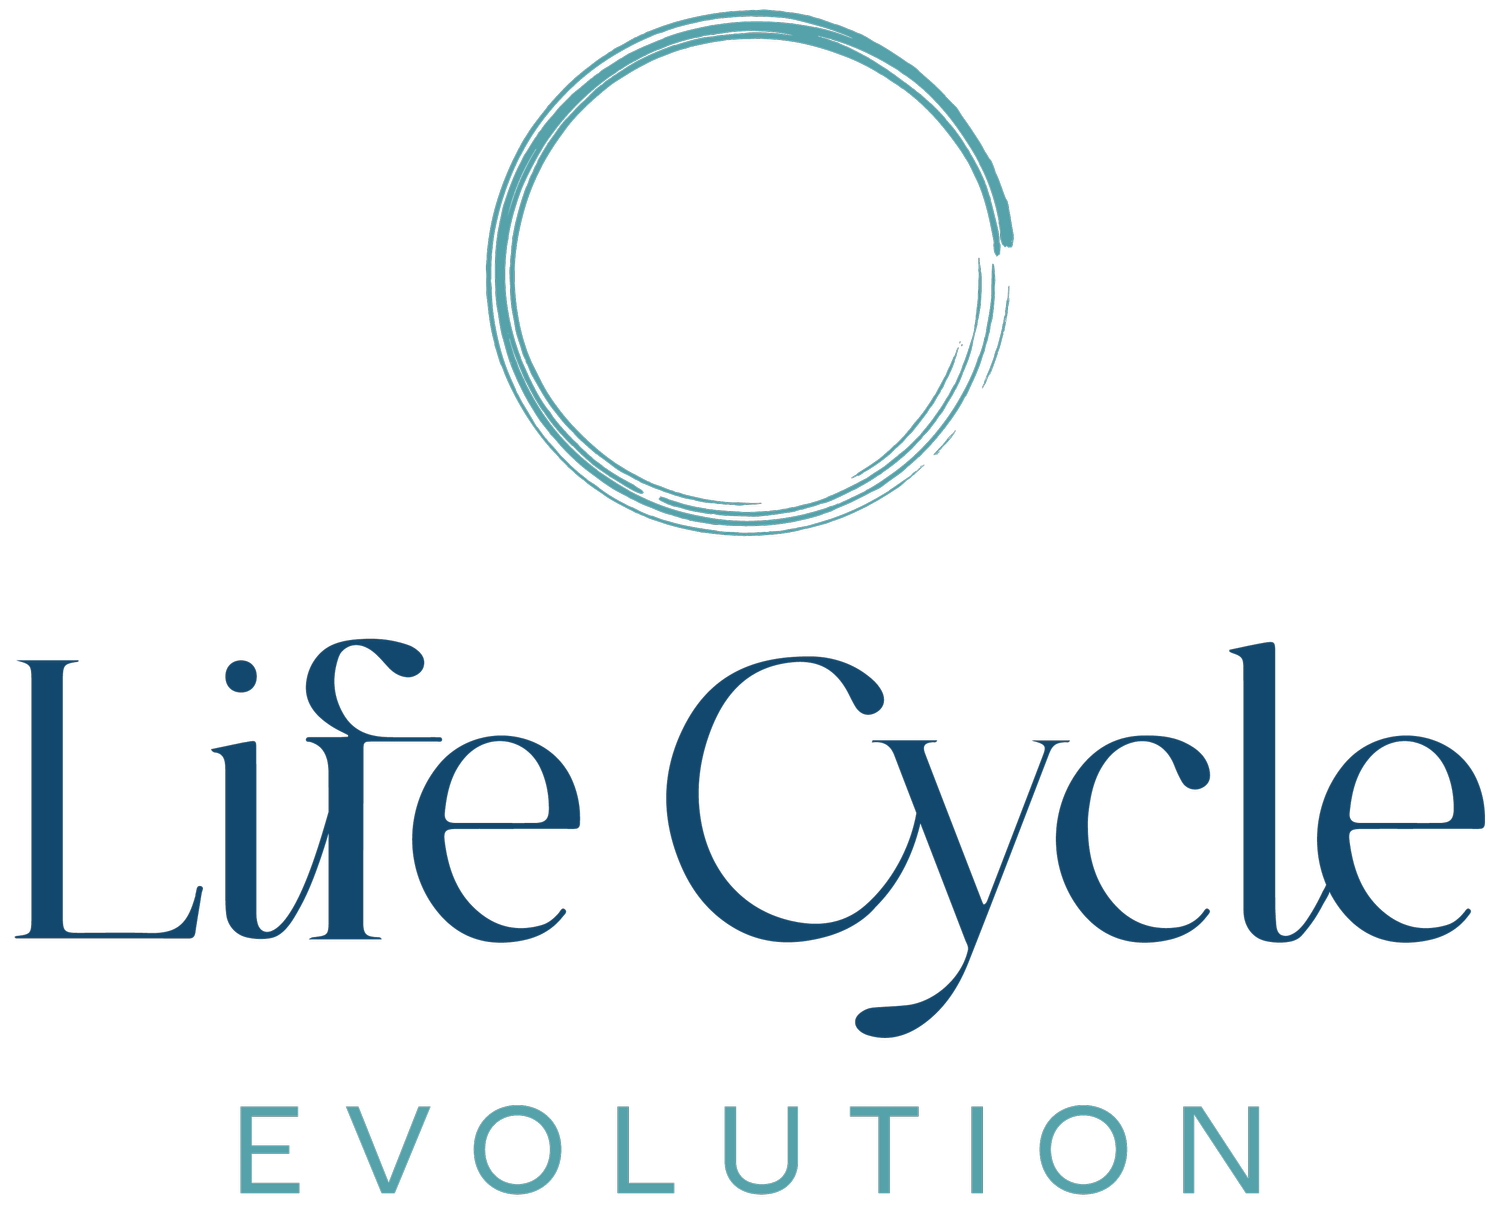 Life Cycle Evolution